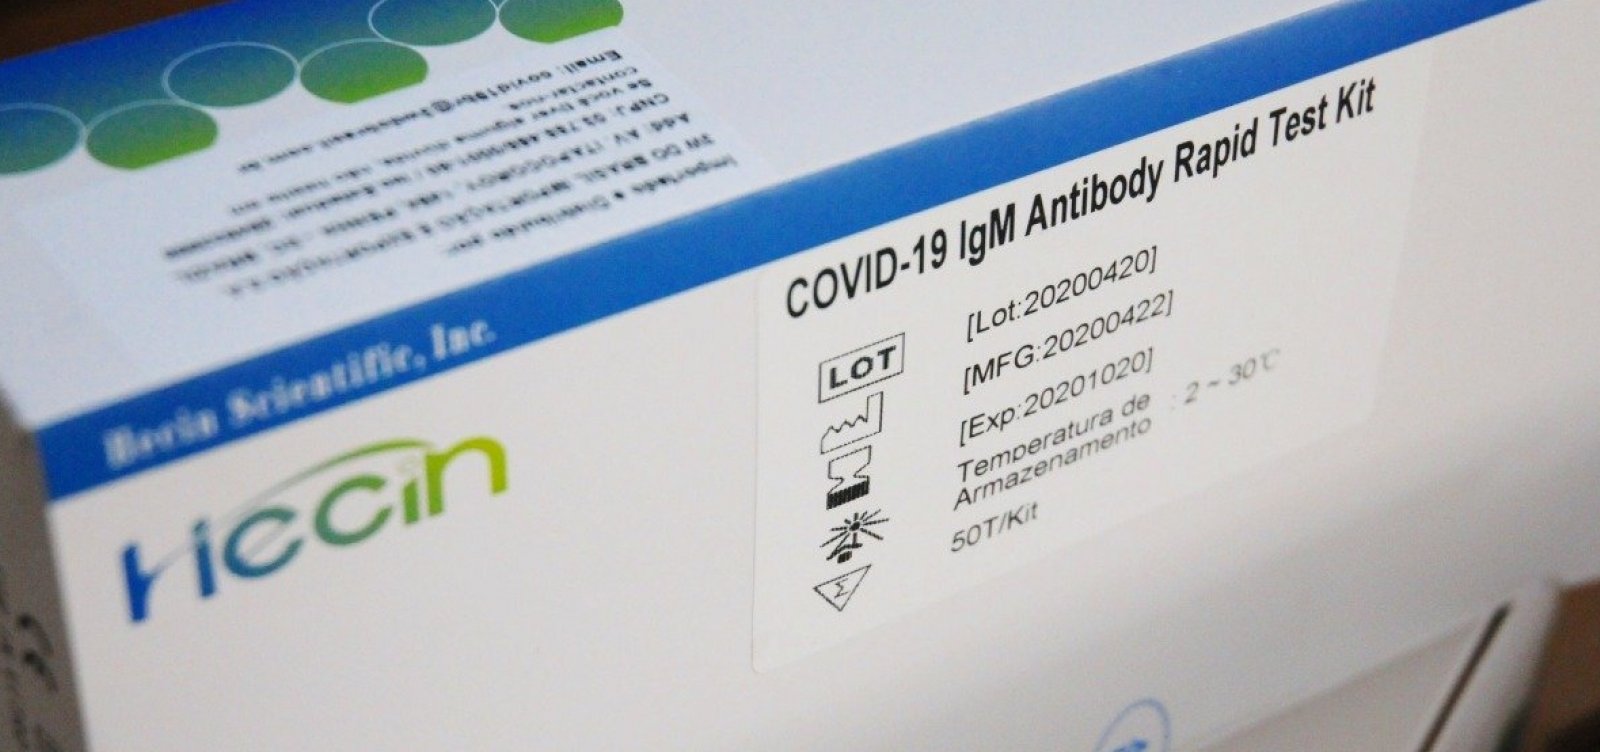 Anvisa emite alerta e não recomenda ivermectina contra a Covid-19